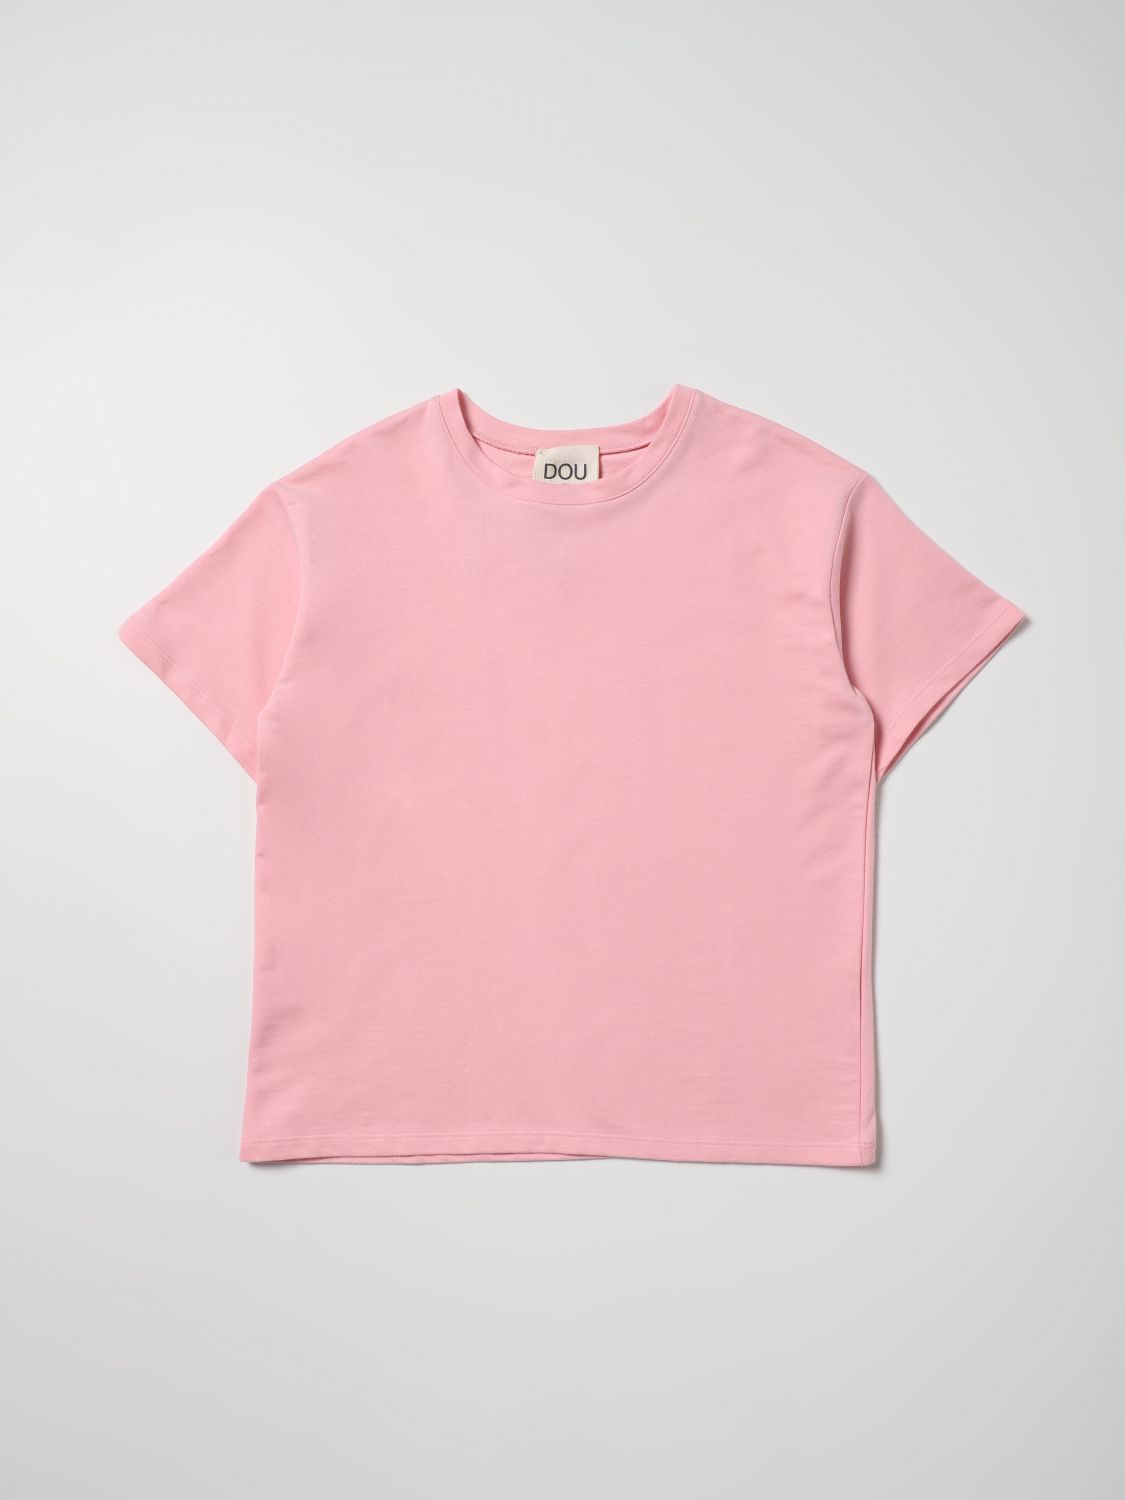 Tシャツ Douuod: Tシャツ Douuod 女の子 ピンク 1